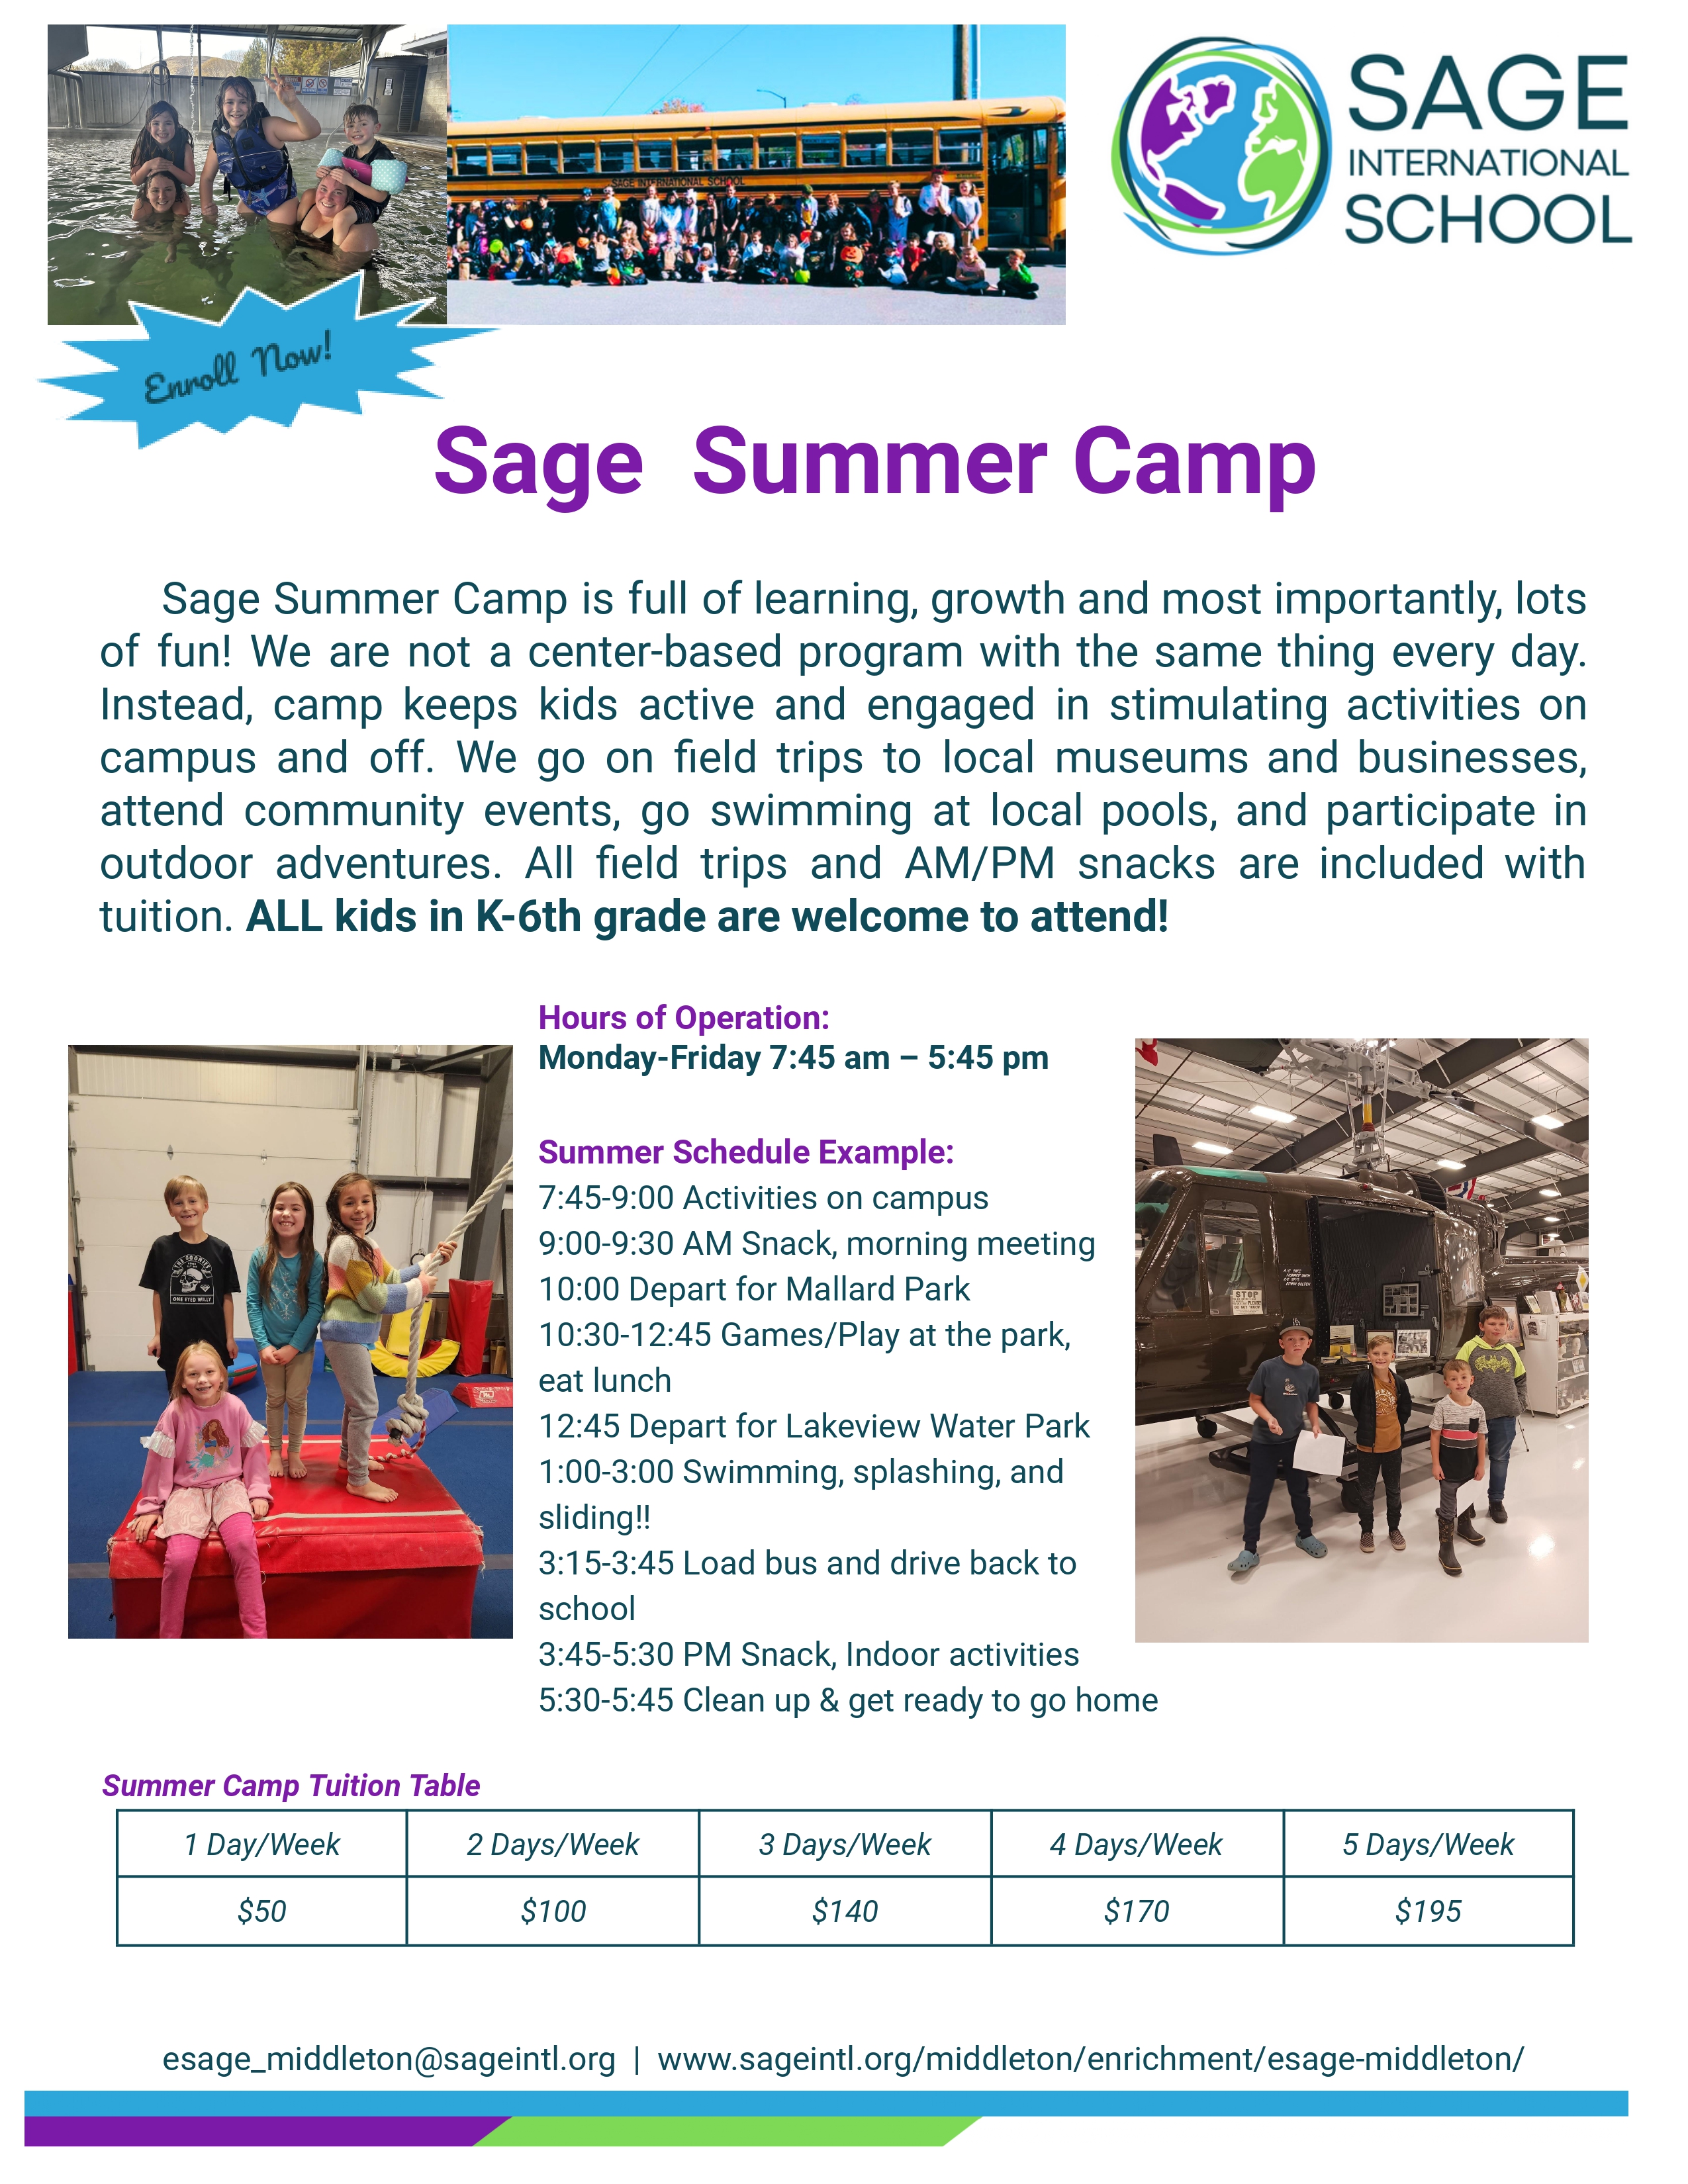 Sage summer camp